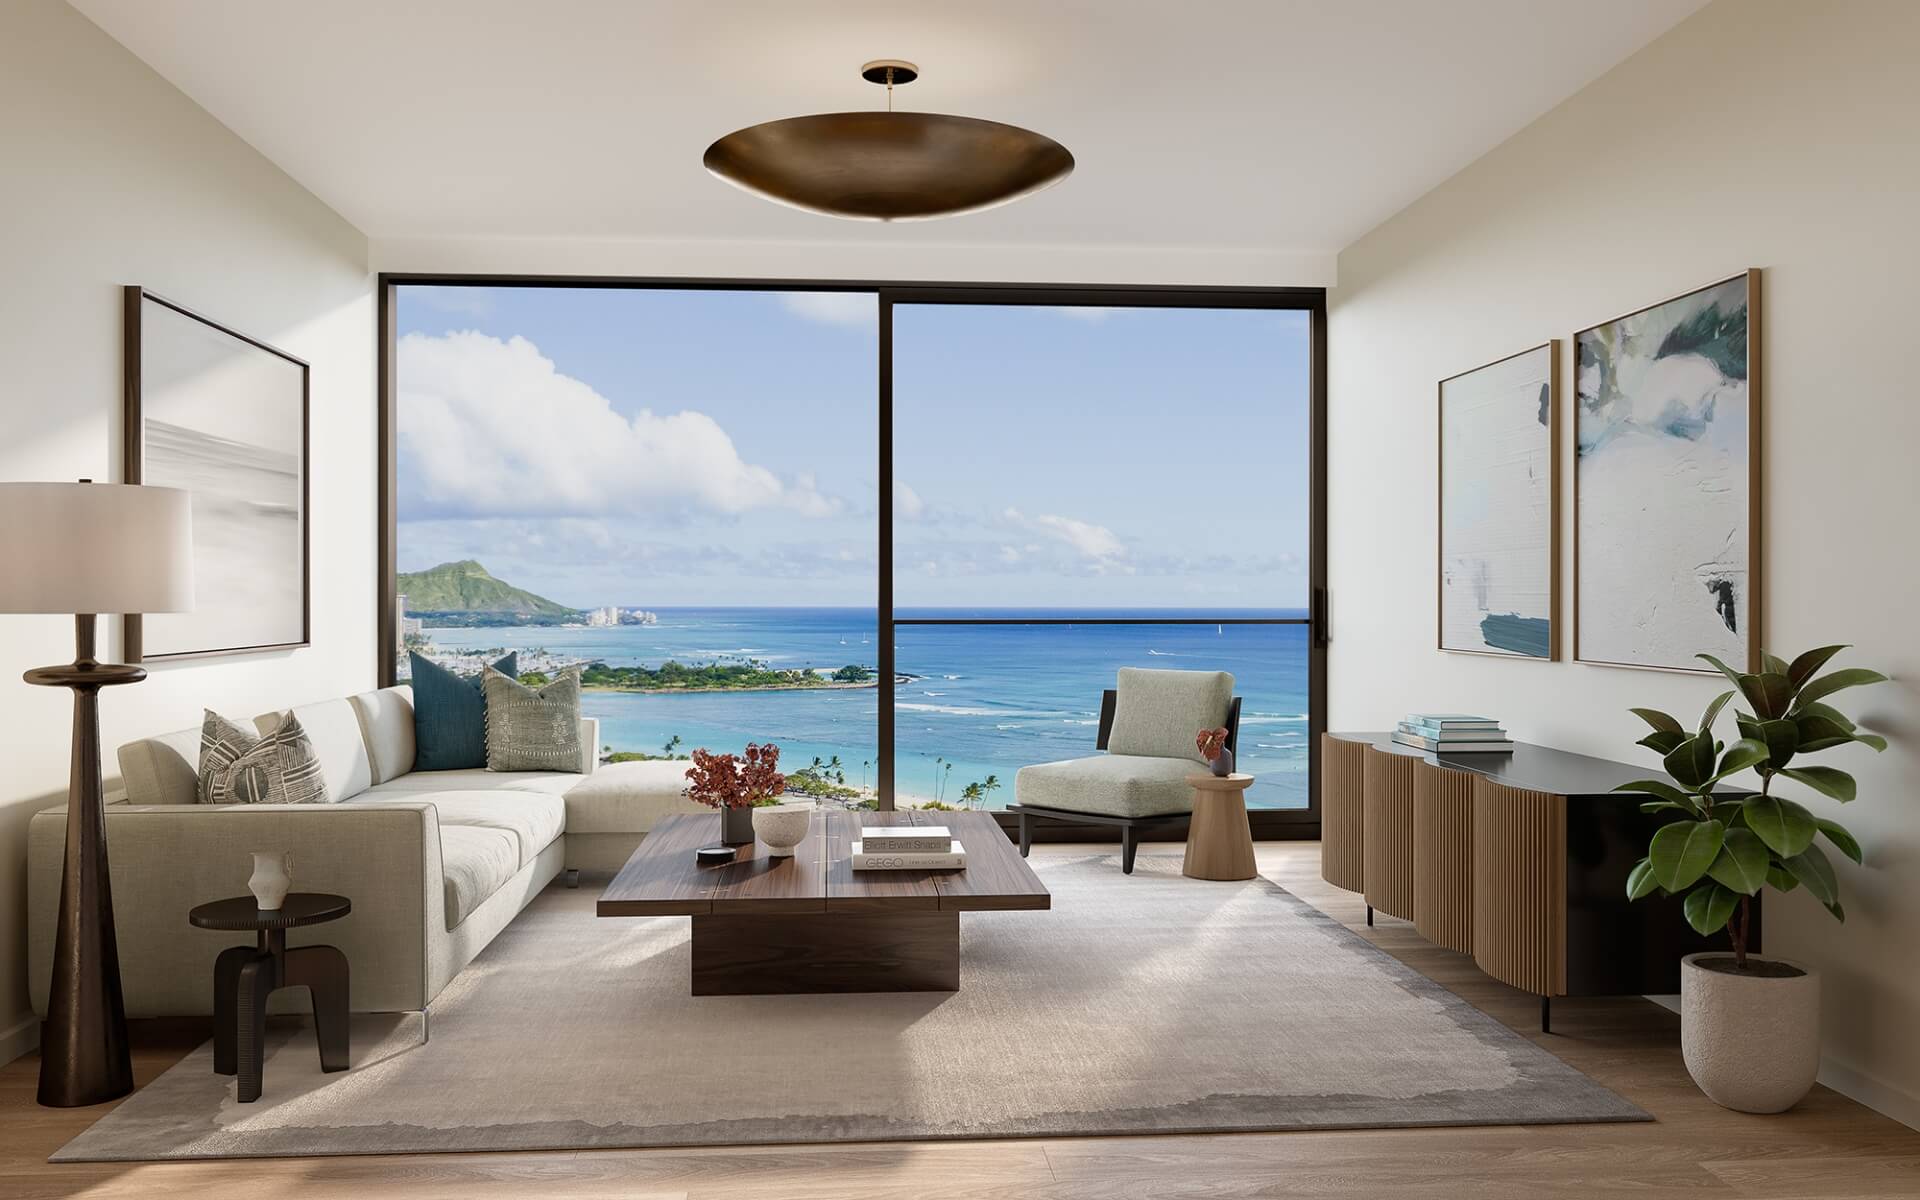 Kalae两室公寓02号起居室可以看到海洋和钻石头的景色。